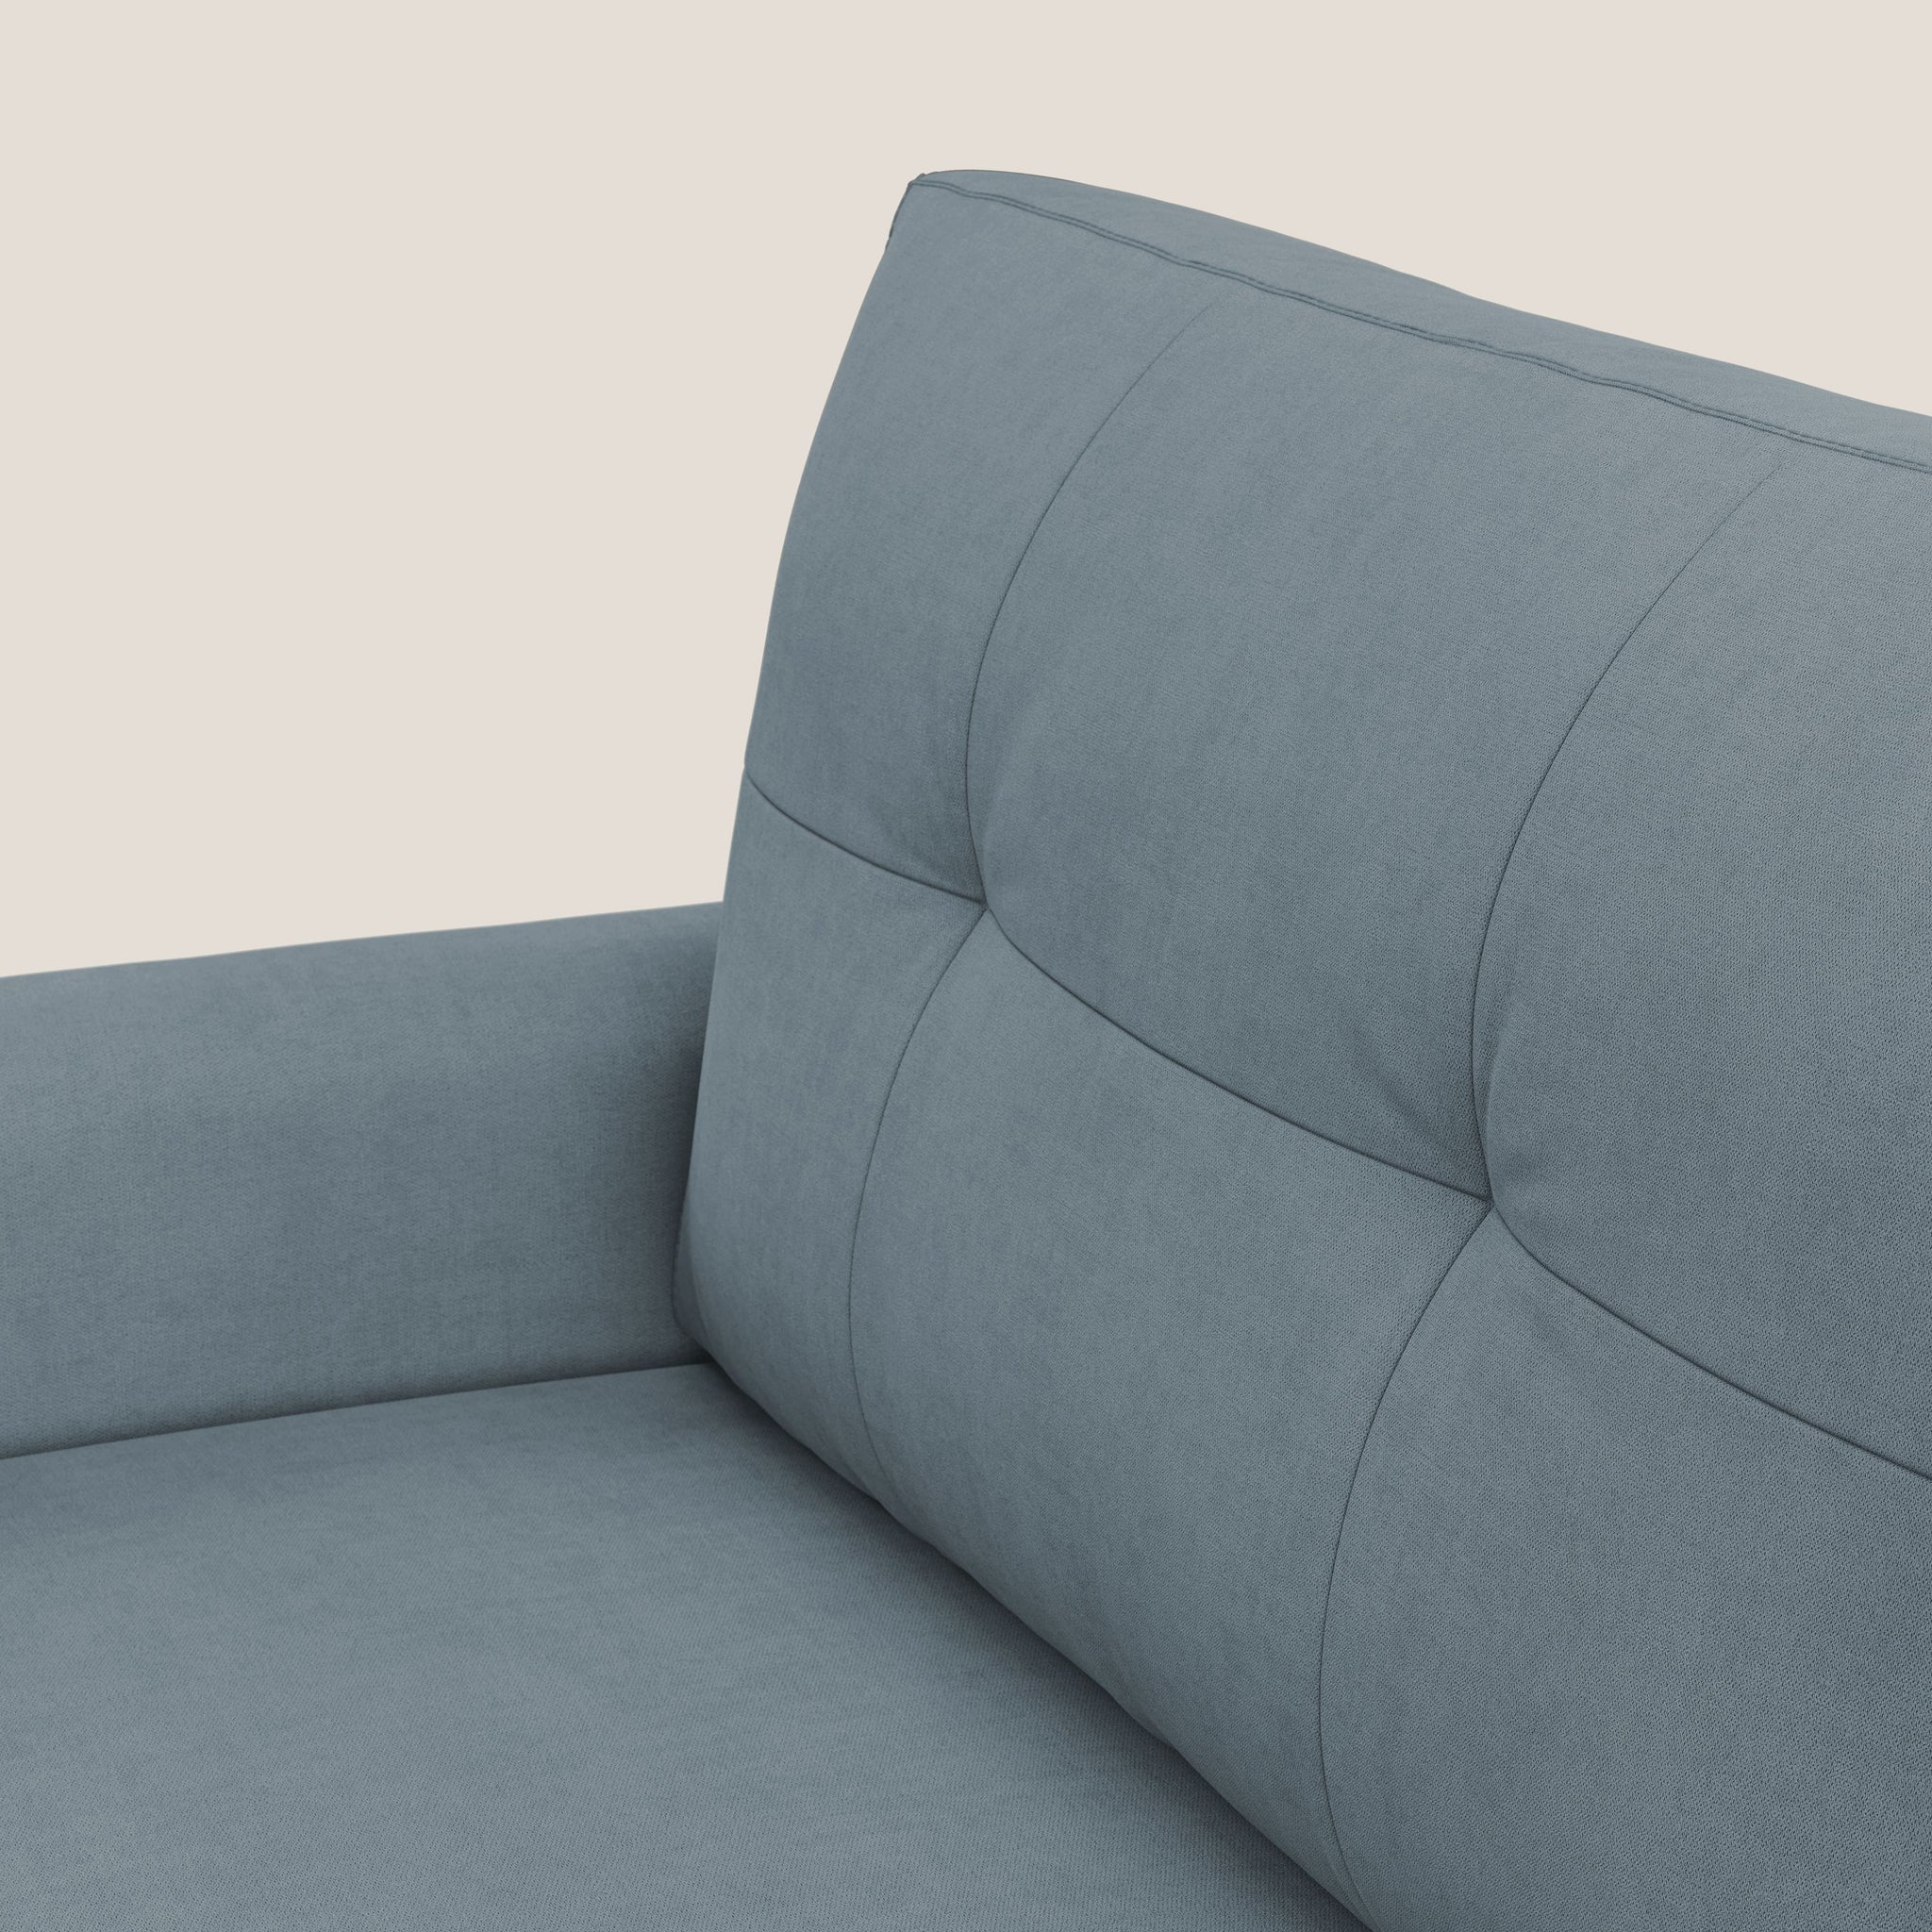 CALLISTO Divano letto matrimoniale in tessuto morbido impermeabile - divano letto, via_enabled - Divani.Store